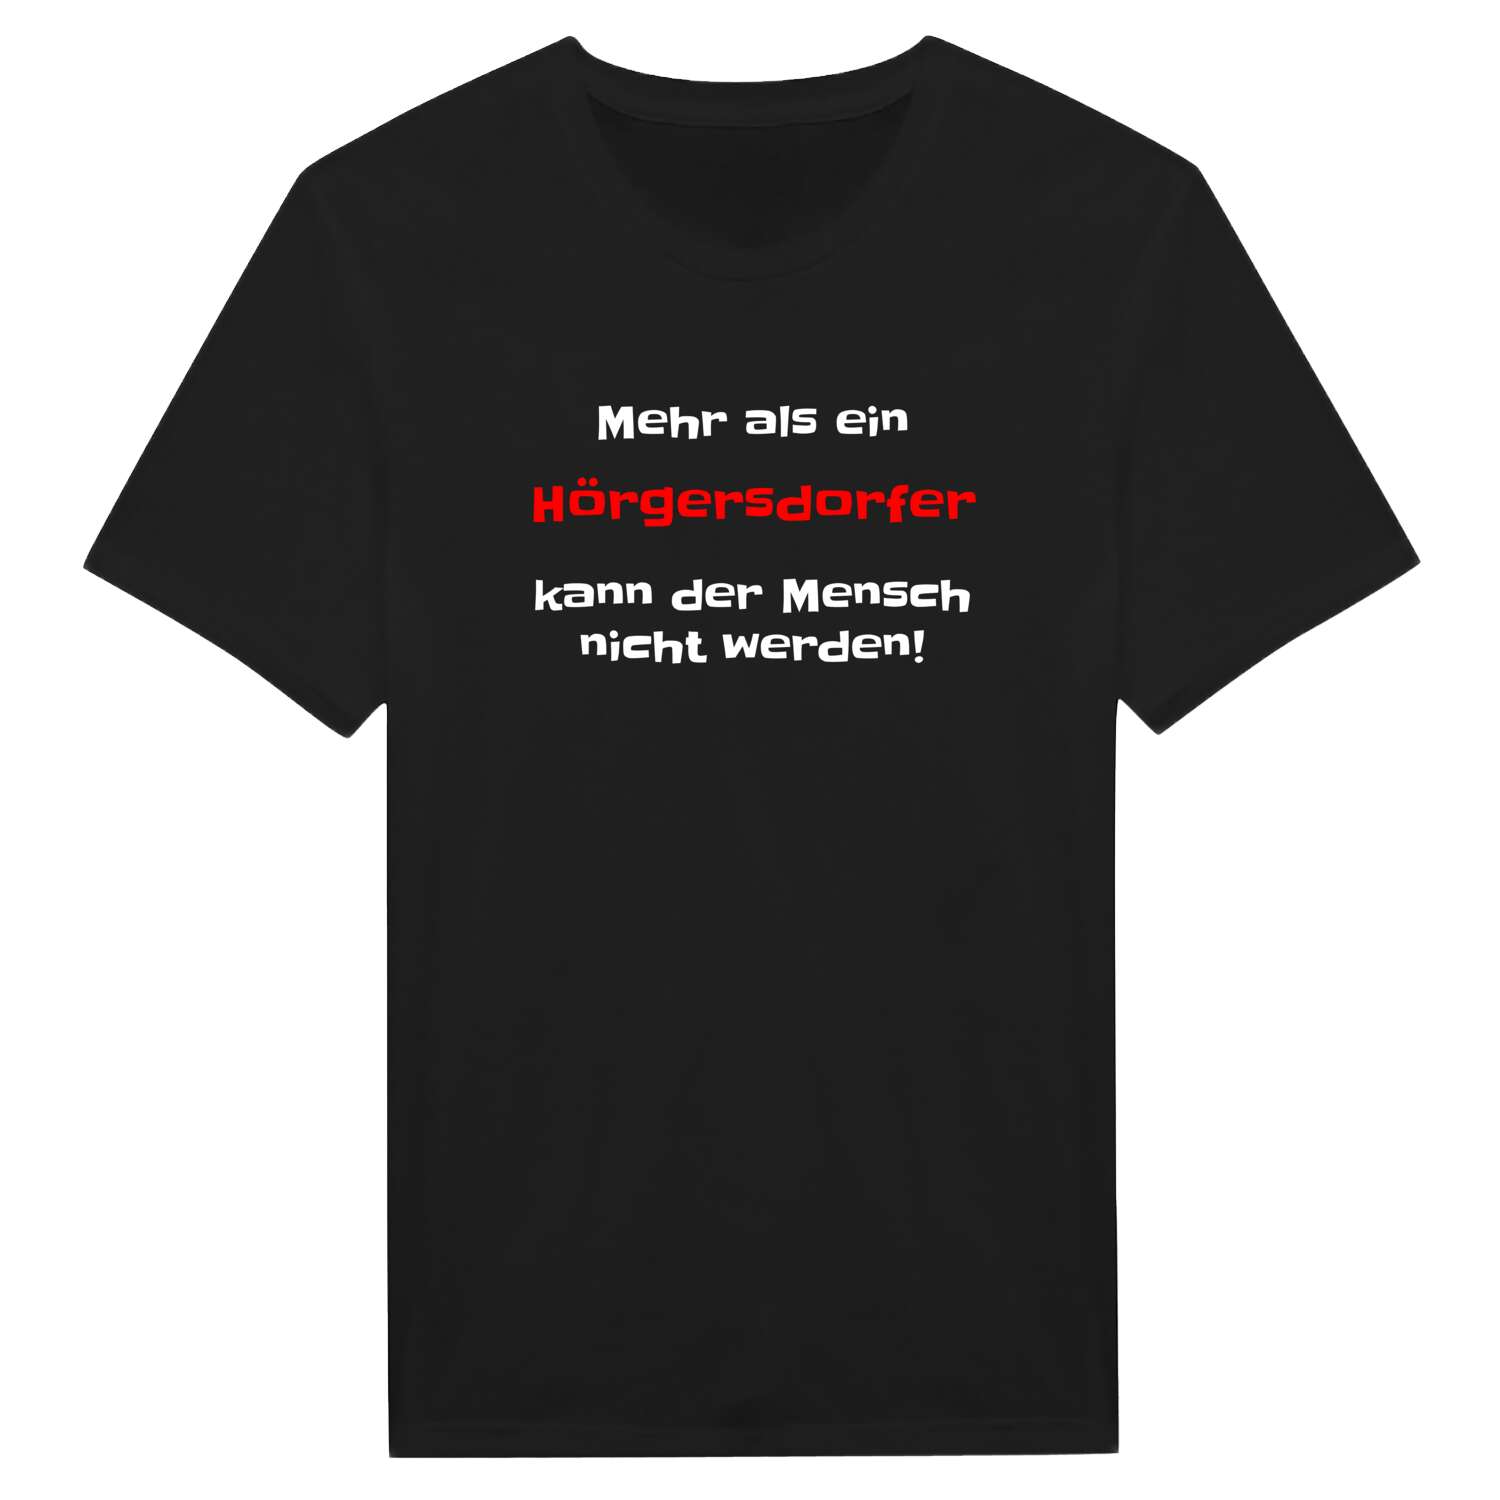 Hörgersdorf T-Shirt »Mehr als ein«